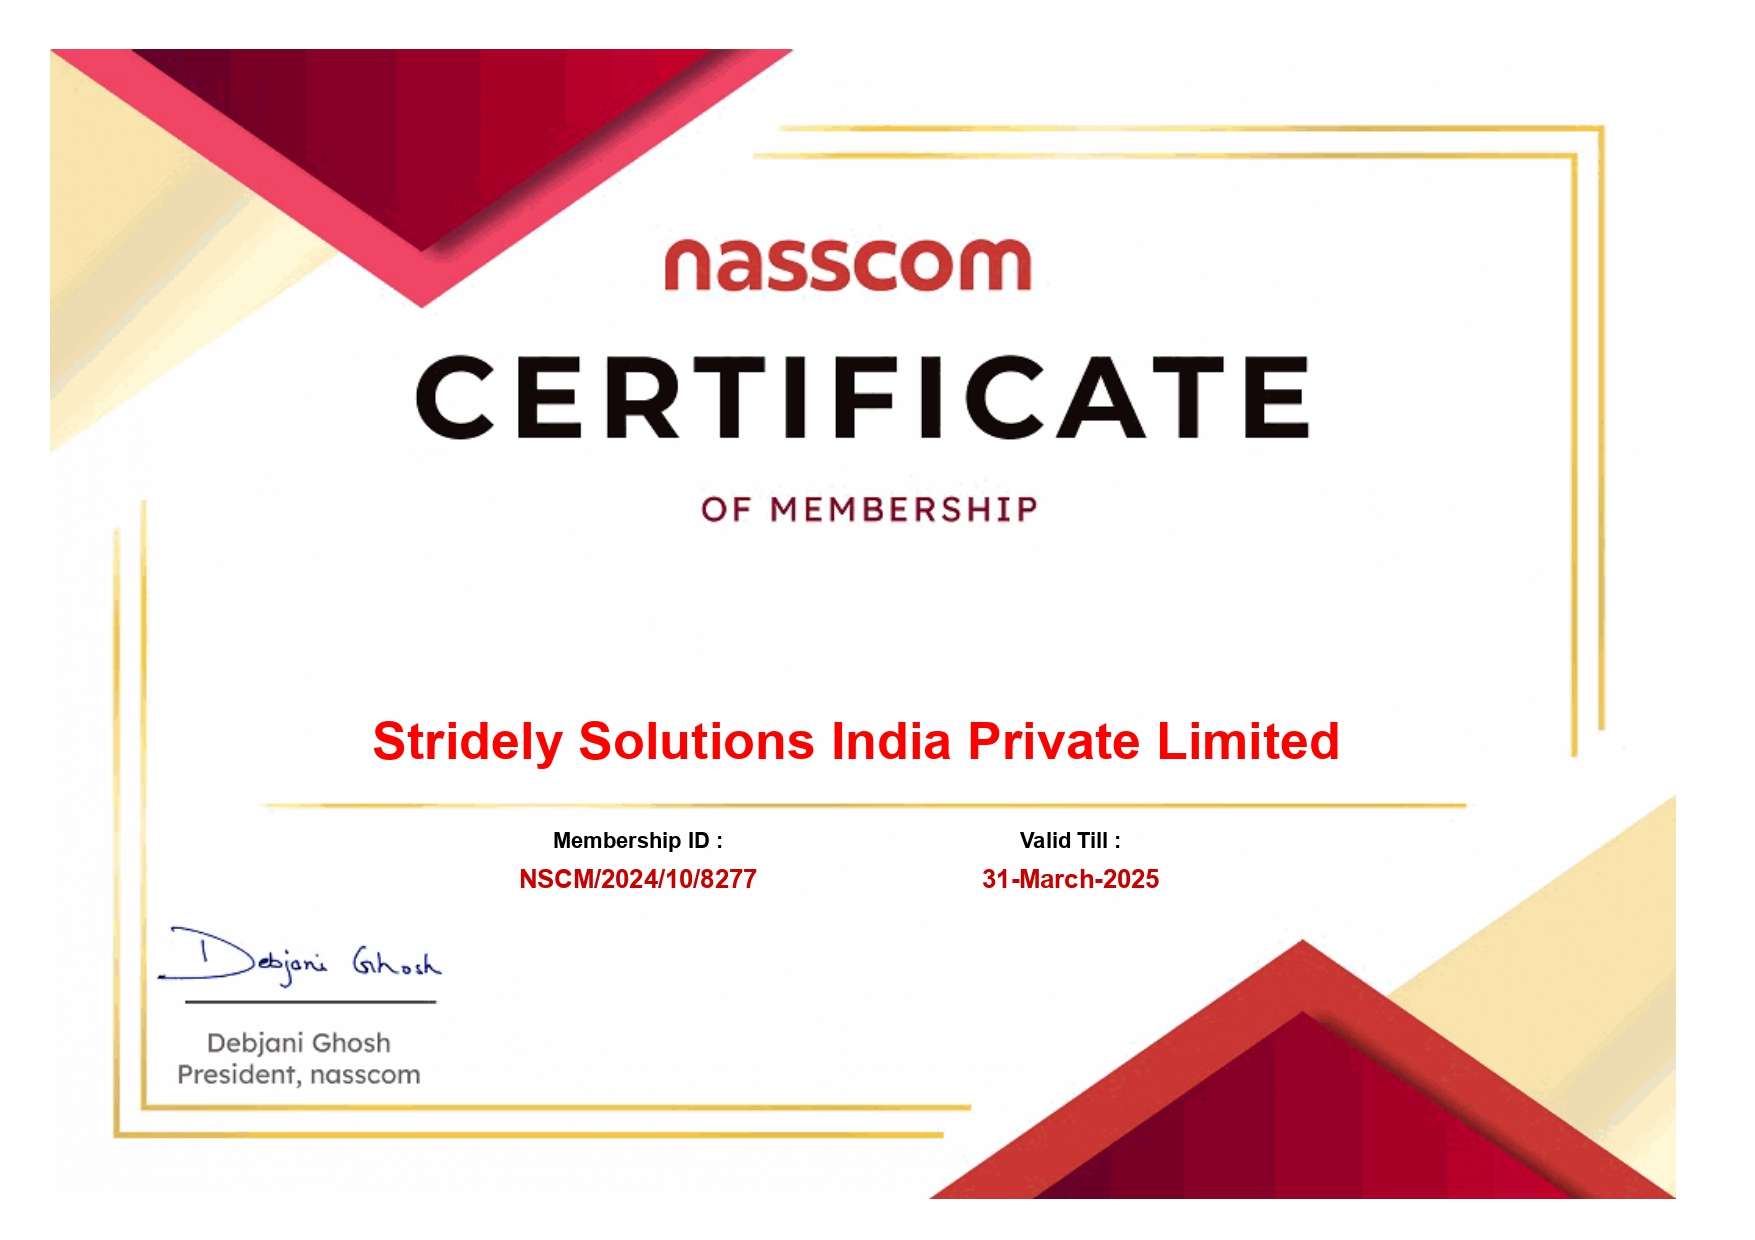 NASSCOM certificate